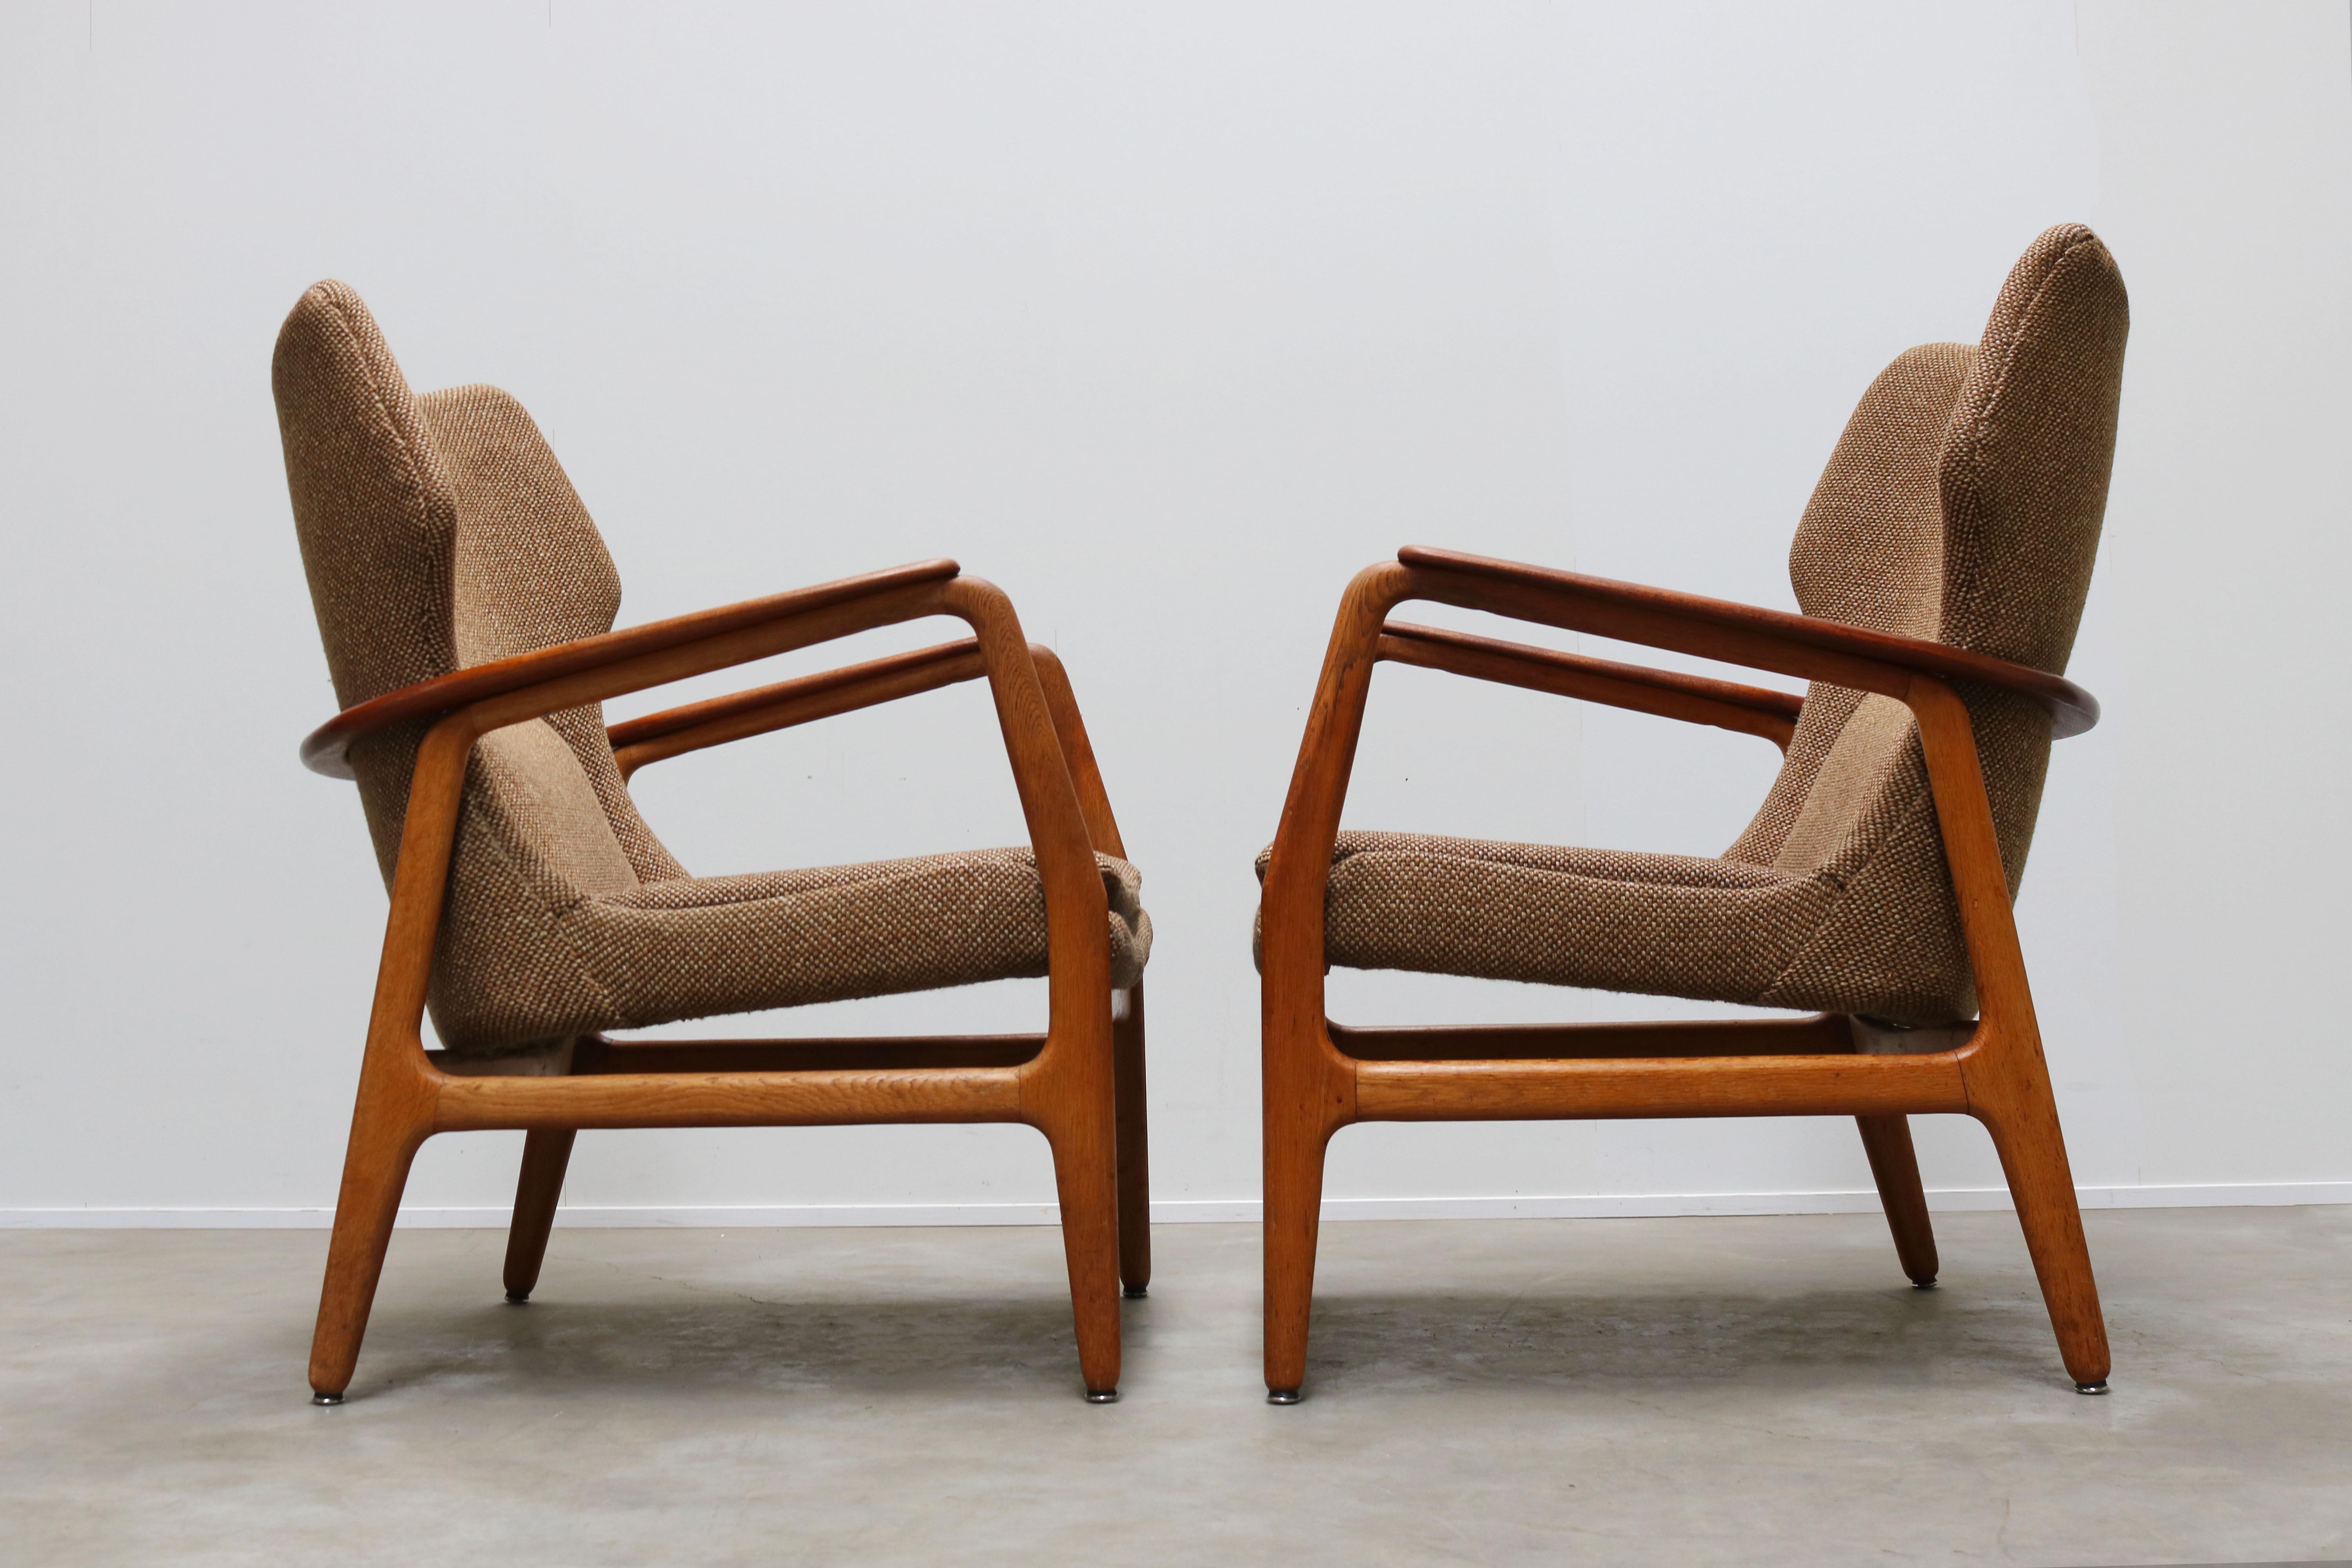 Mid-Century Modern Pair of Danish Lounge Chairs by Aksel Bender Madsen 1952 Bovenkamp Teak Brown